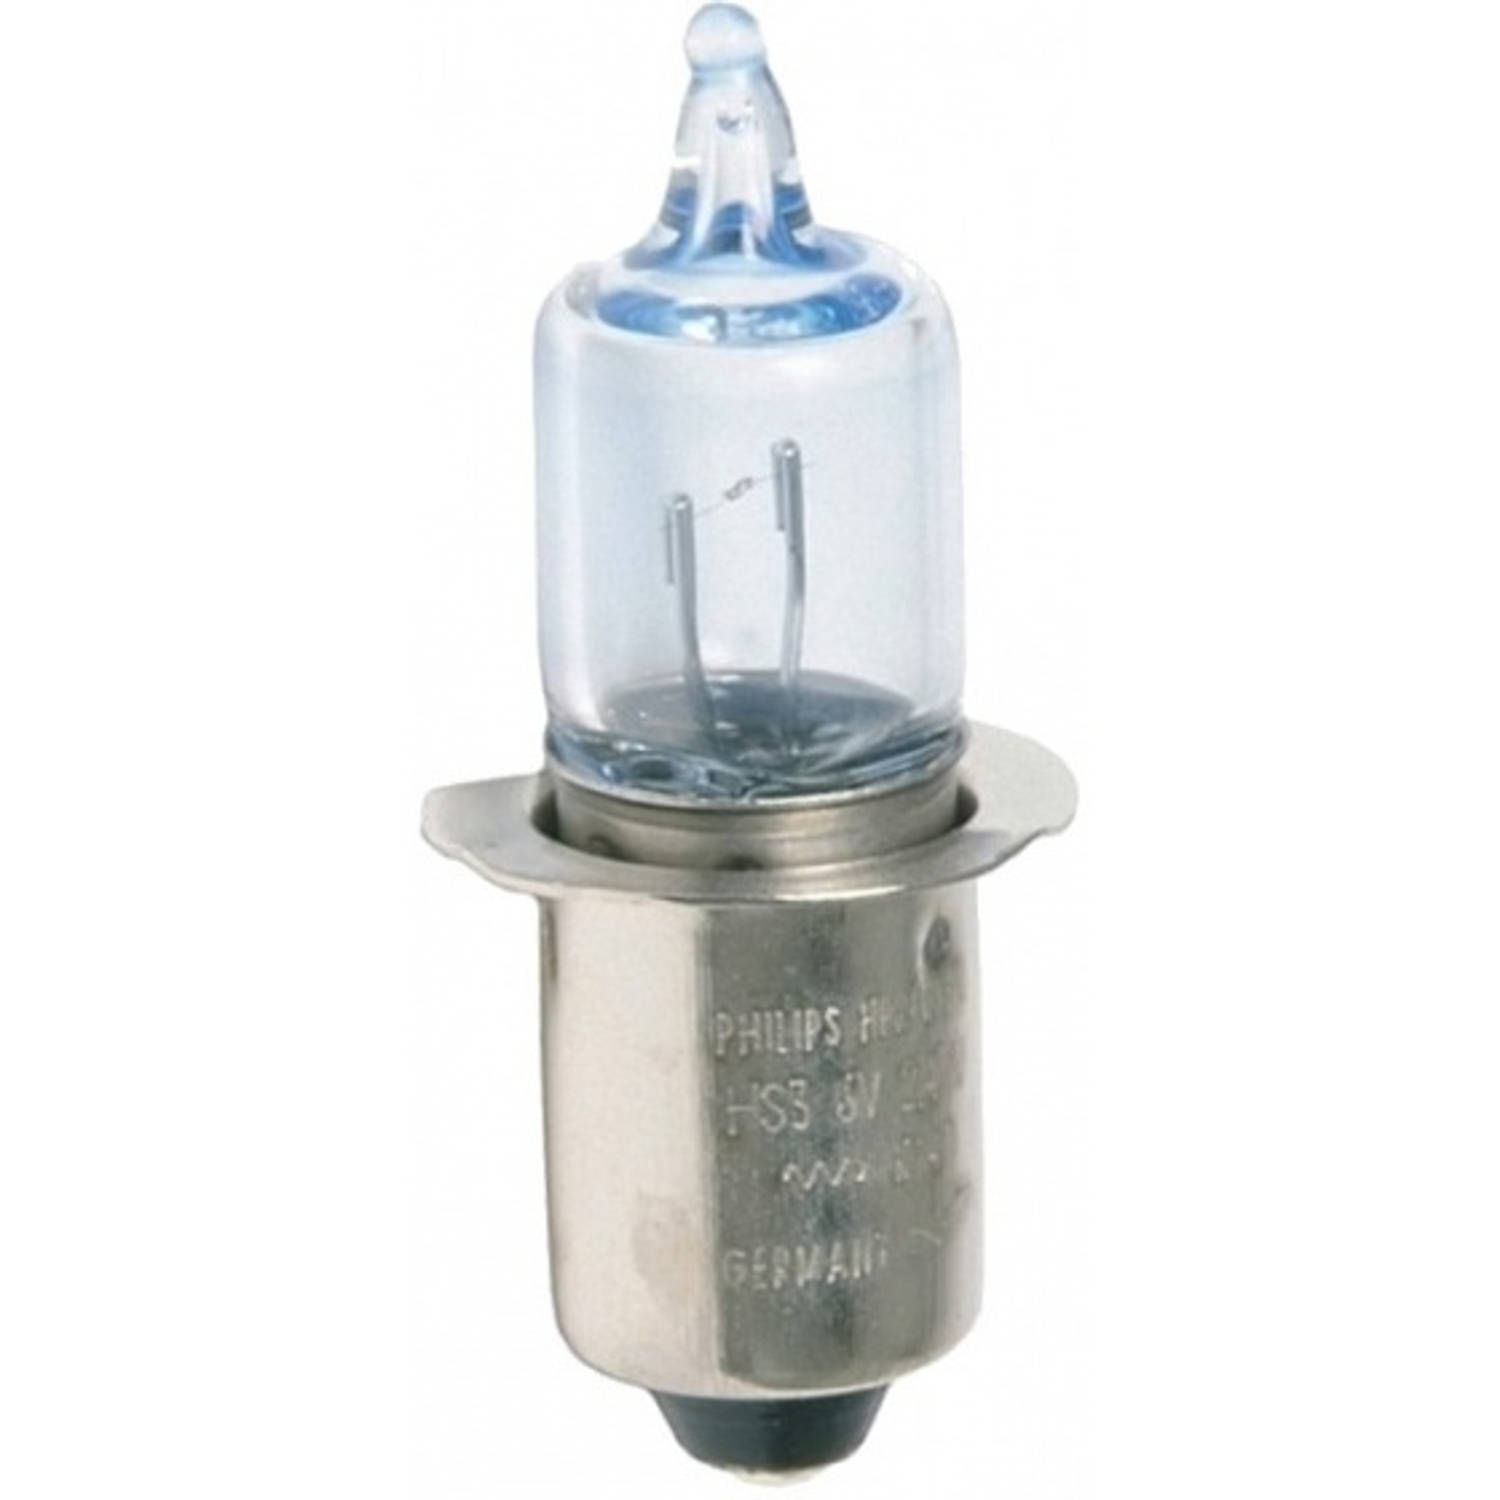 Halogeenlamp met kraag 6 Volt / 2,4 Watt / 0,45 Ampere P13.5S